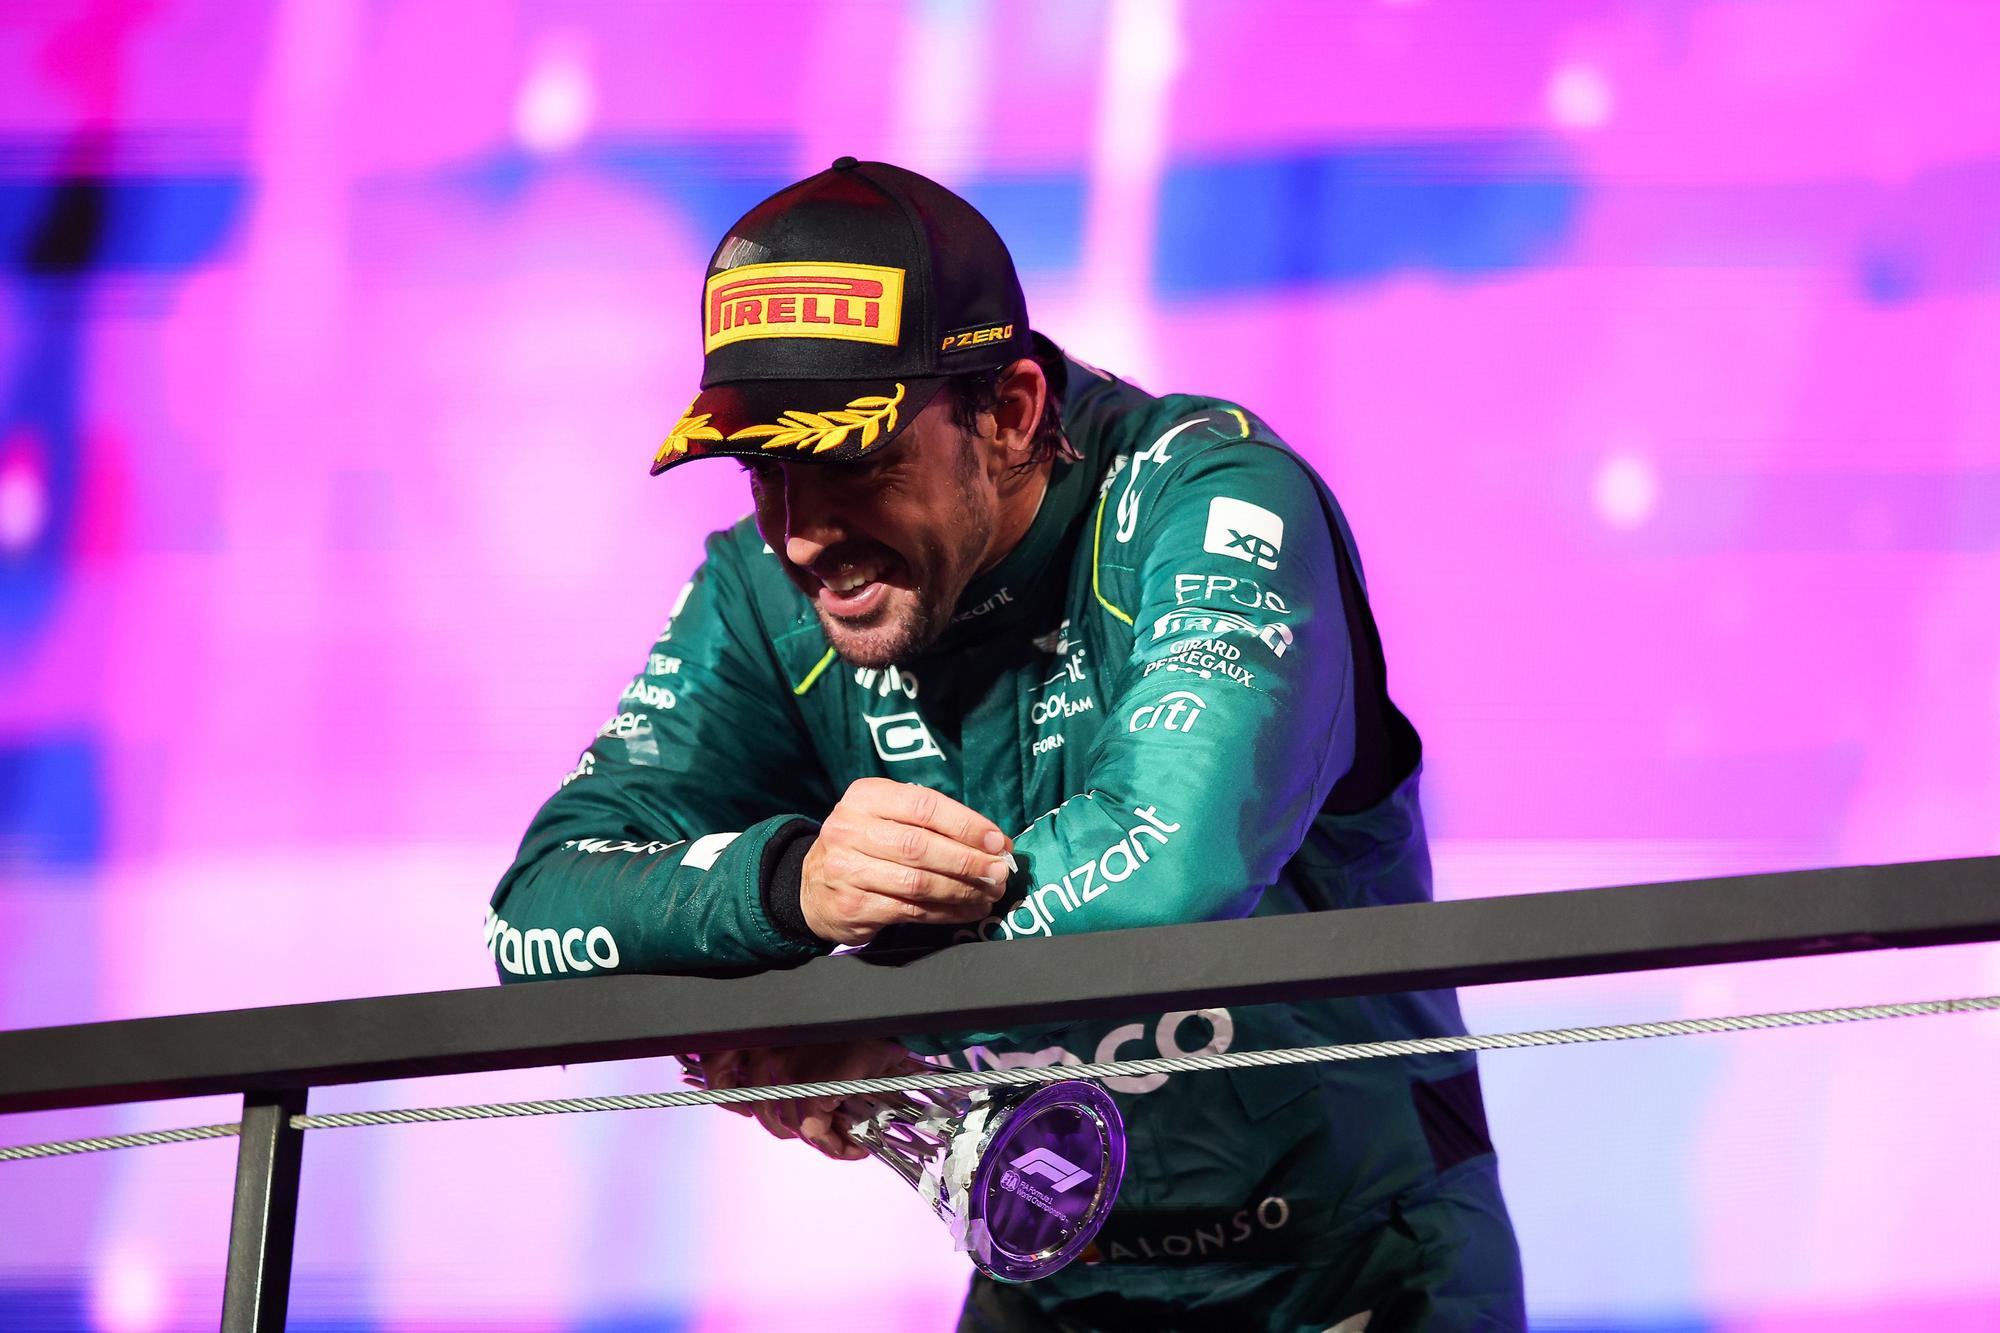 Fernando Alonso en el podio del Gran Premio de Arabia Saudí